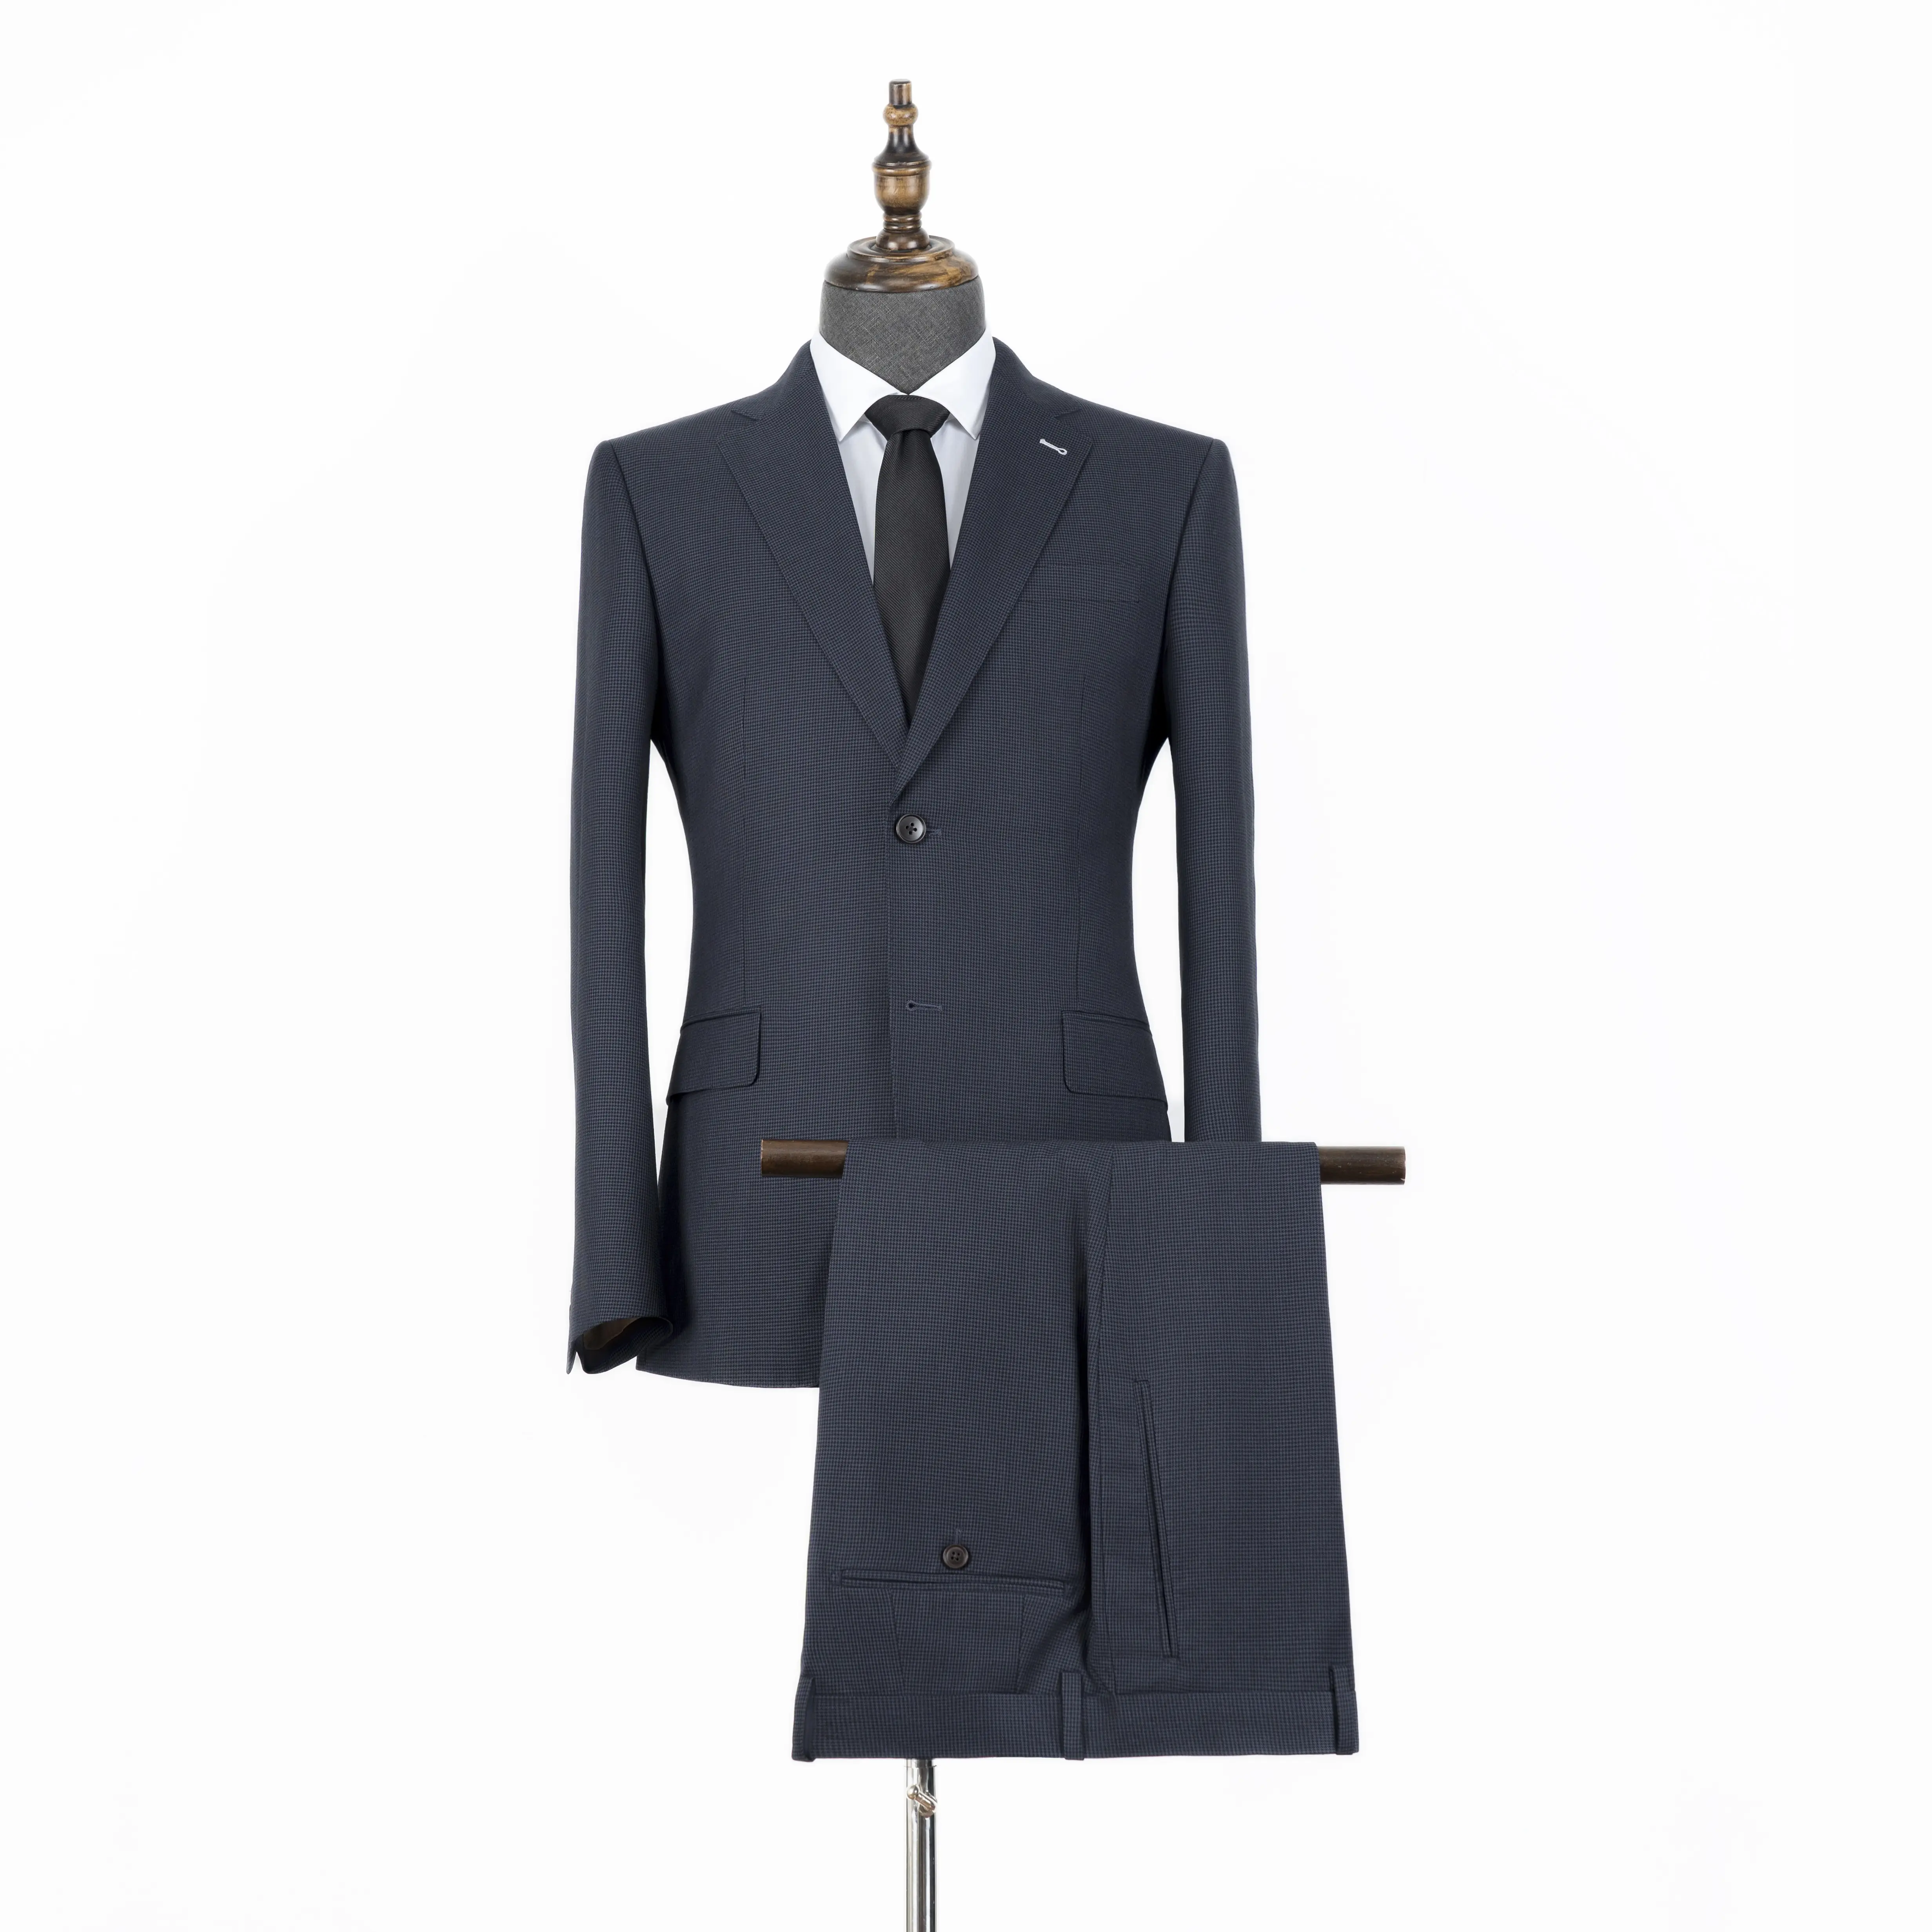 男性用の高品質イタリアンスタイルスリムフィットネイビーブルーカスタムテーラードオーダーメイドのビジネススーツ